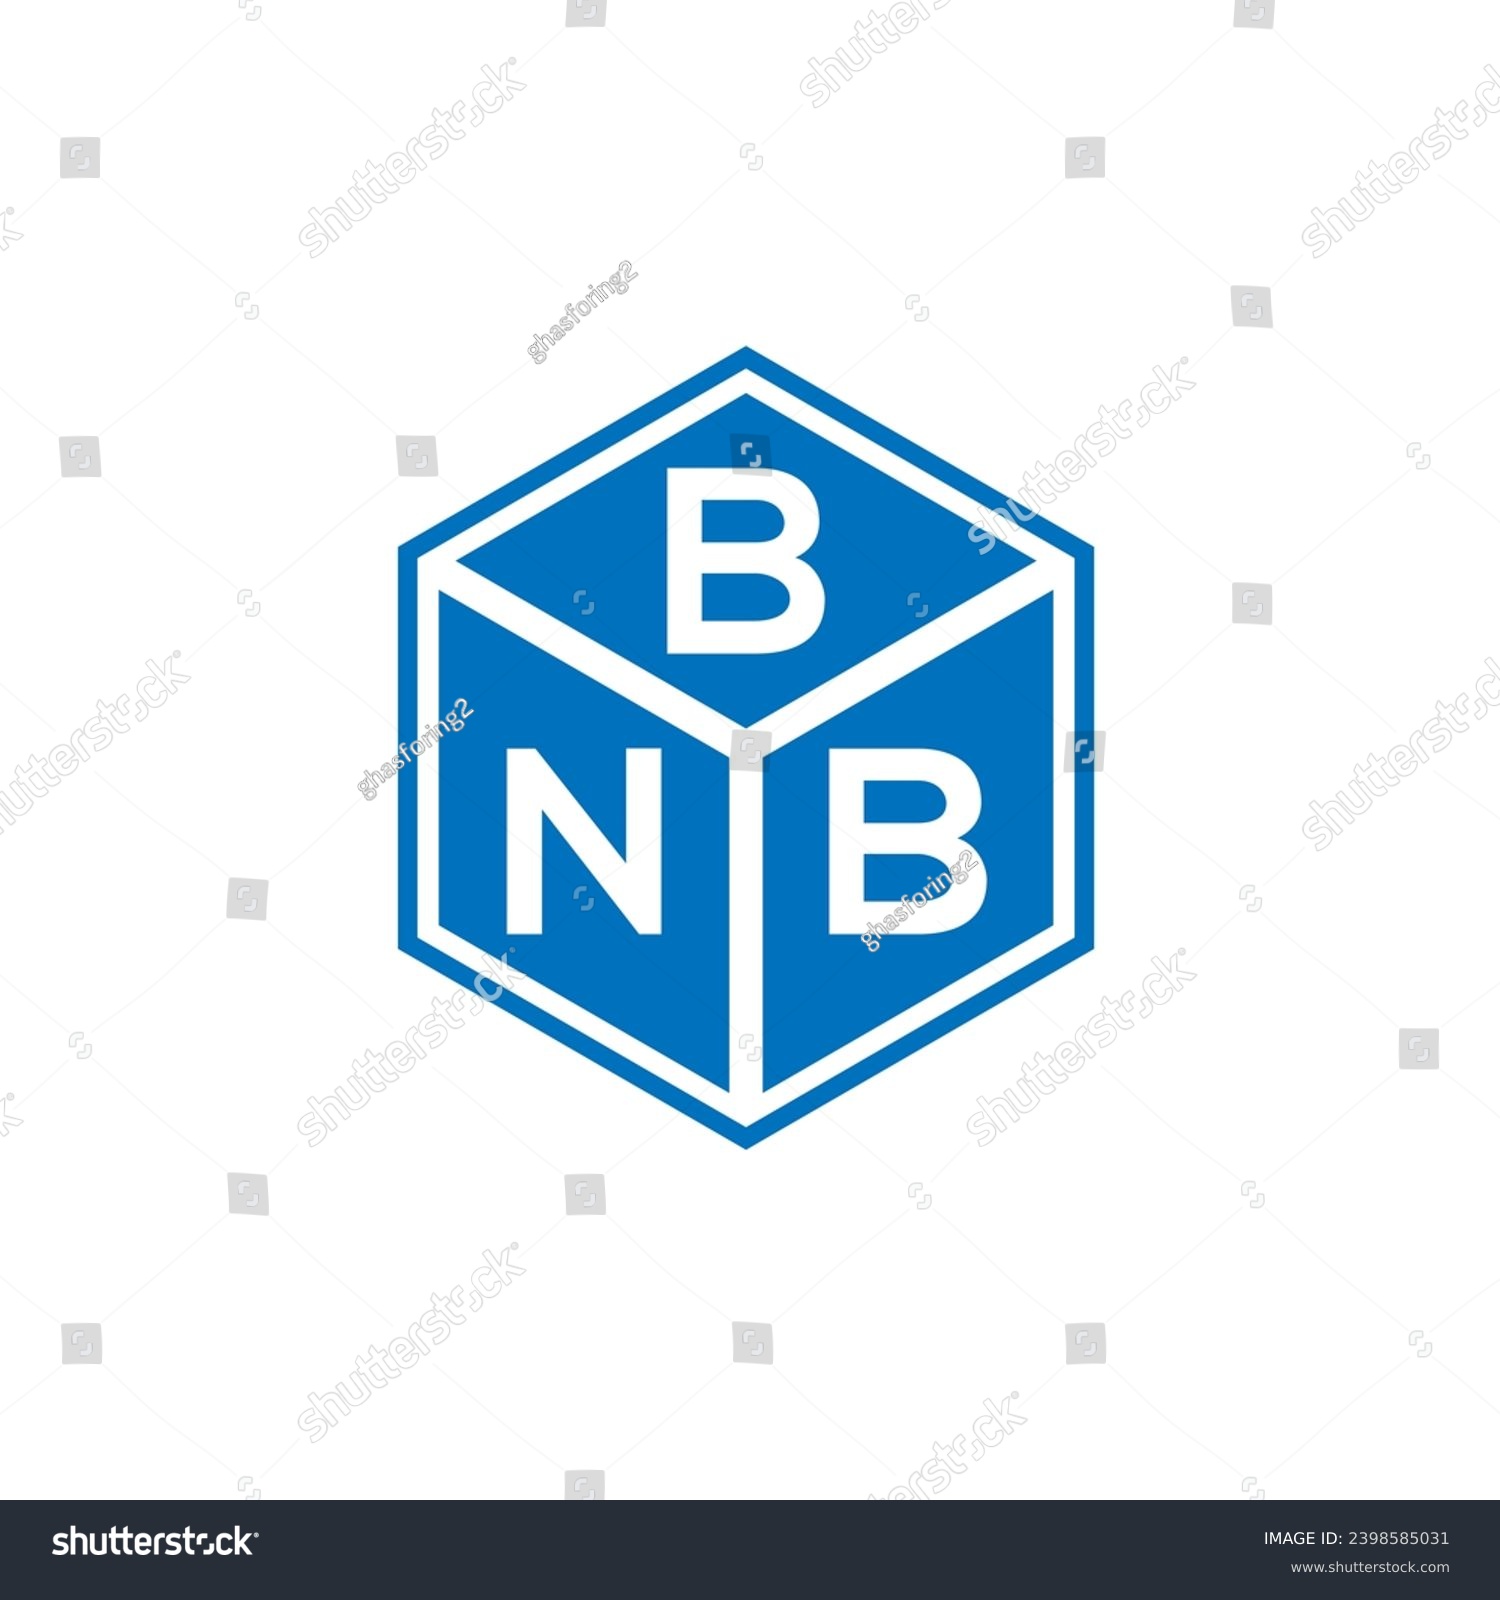 SVG of BNB letter logo design on black background. BNB creative initials letter logo concept. BNB letter design.
 svg